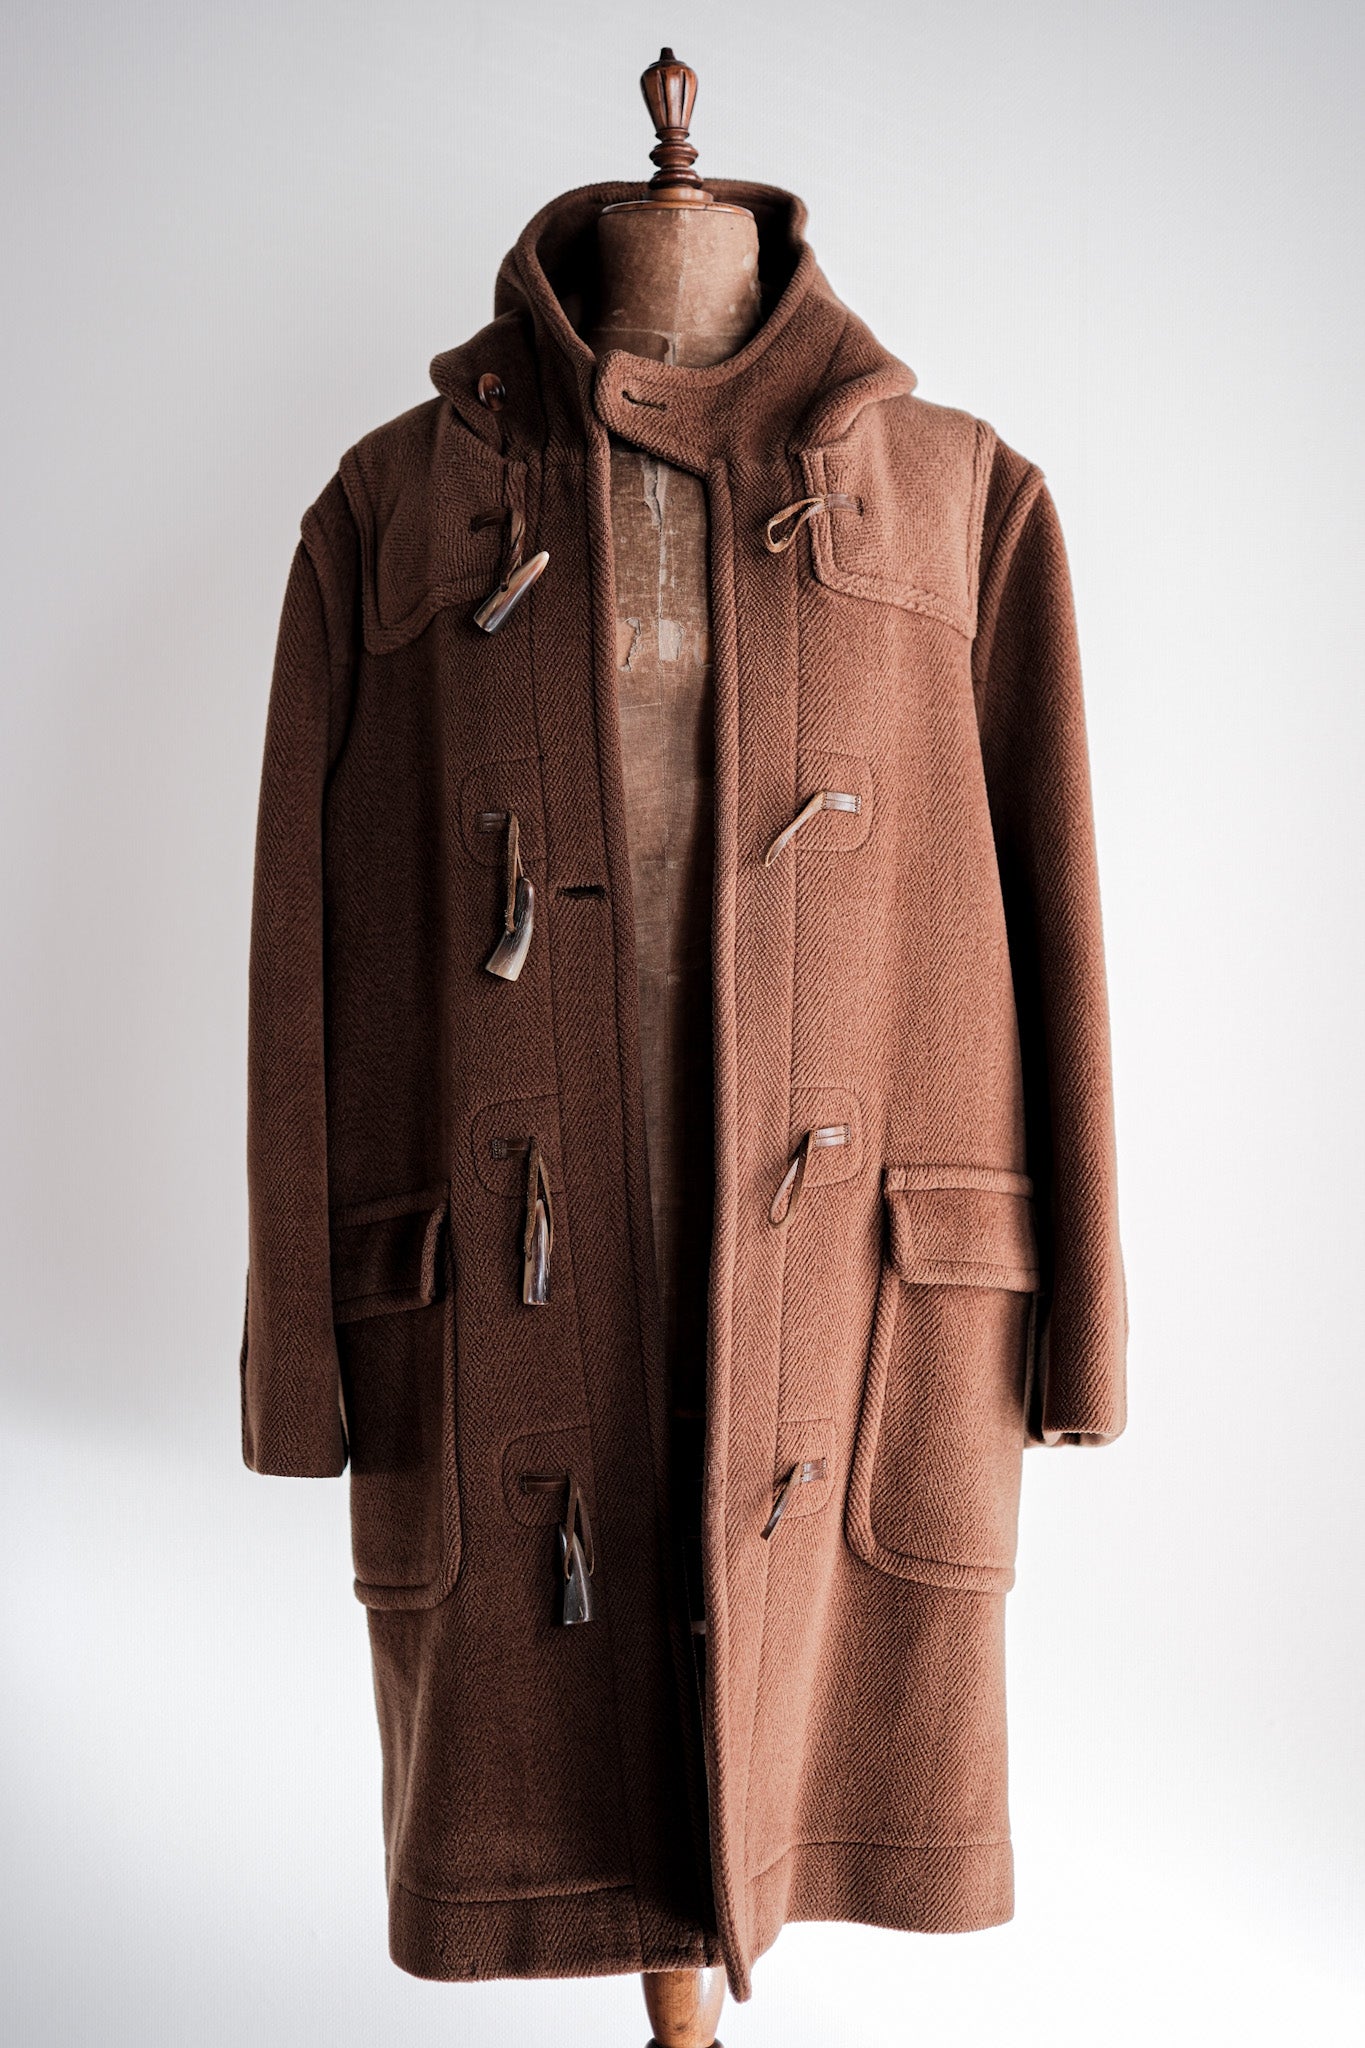 [~ 90's] Old Invertere Wool Duffle Coat "Moorbrook" "de Paz NOTE SECTION"